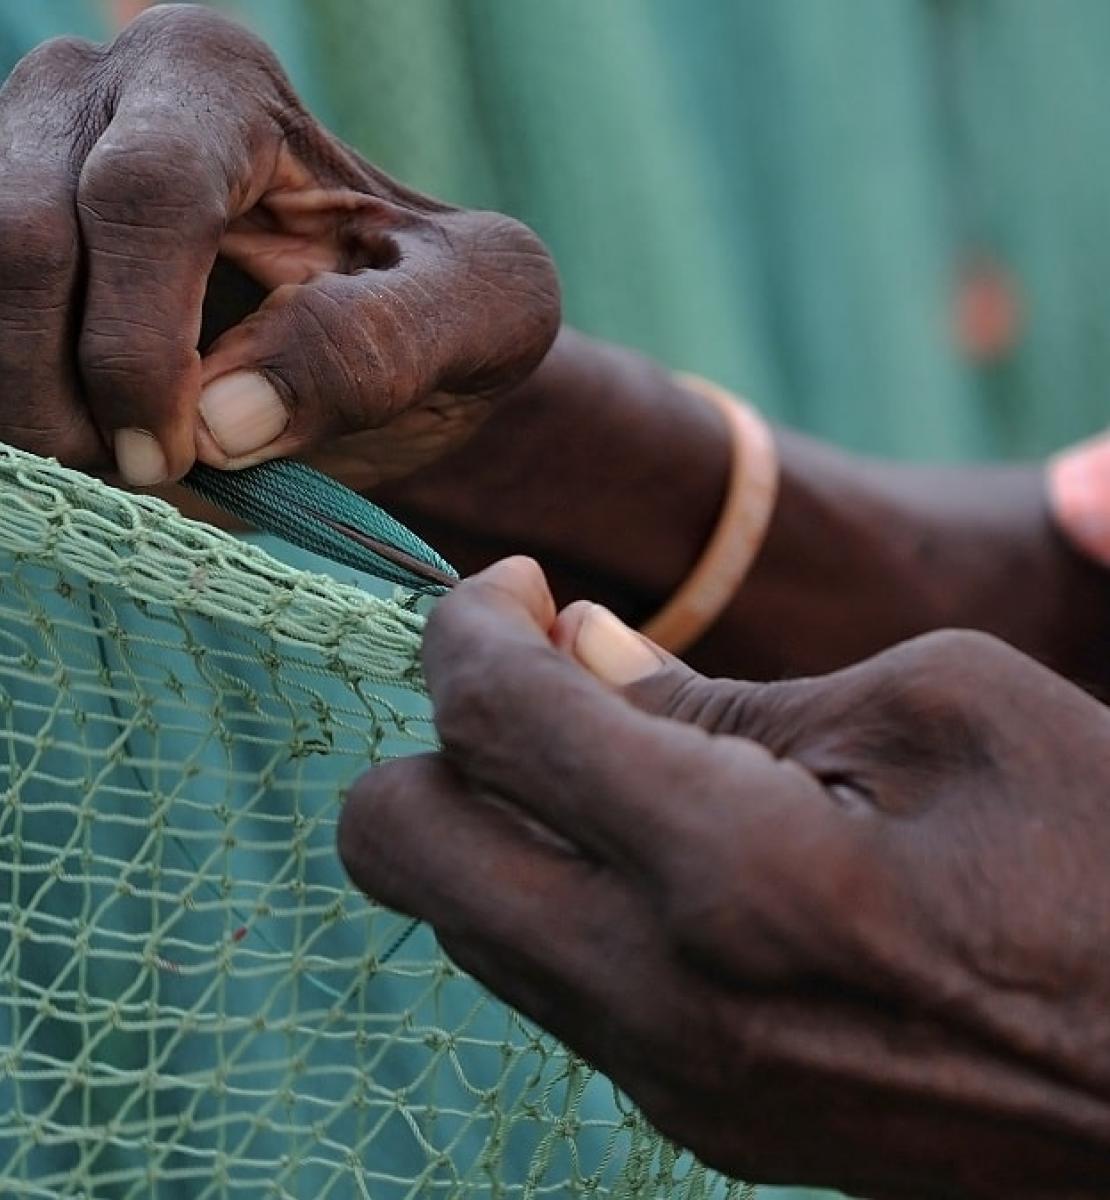 加勒比海圣卢西亚岛上的一名渔民在固定渔网。